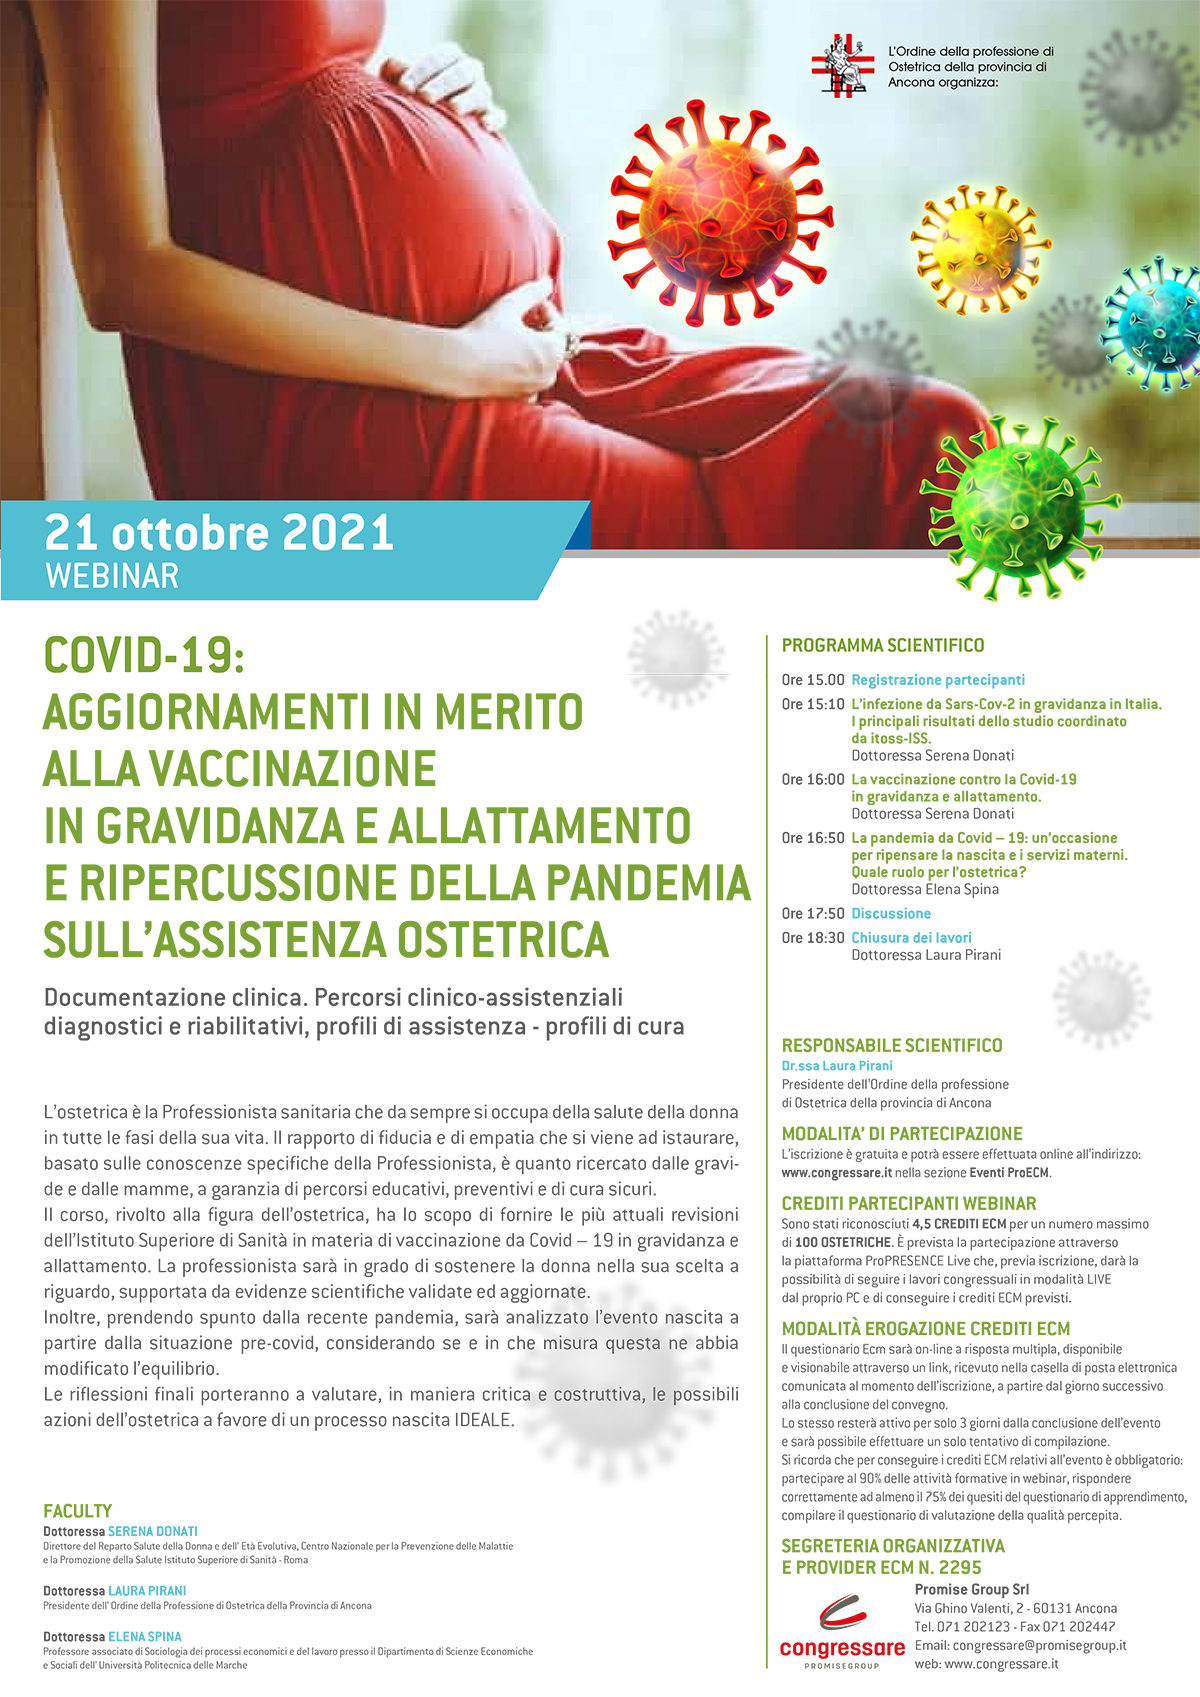 COVID-19: AGGIORNAMENTI IN MERITO ALLA VACCINAZIONE IN GRAVIDANZA E ALLATTAMENTO E RIPERCUSSIONE DELLA PANDEMIA SULL'ASSISTENZA OSTETRICA